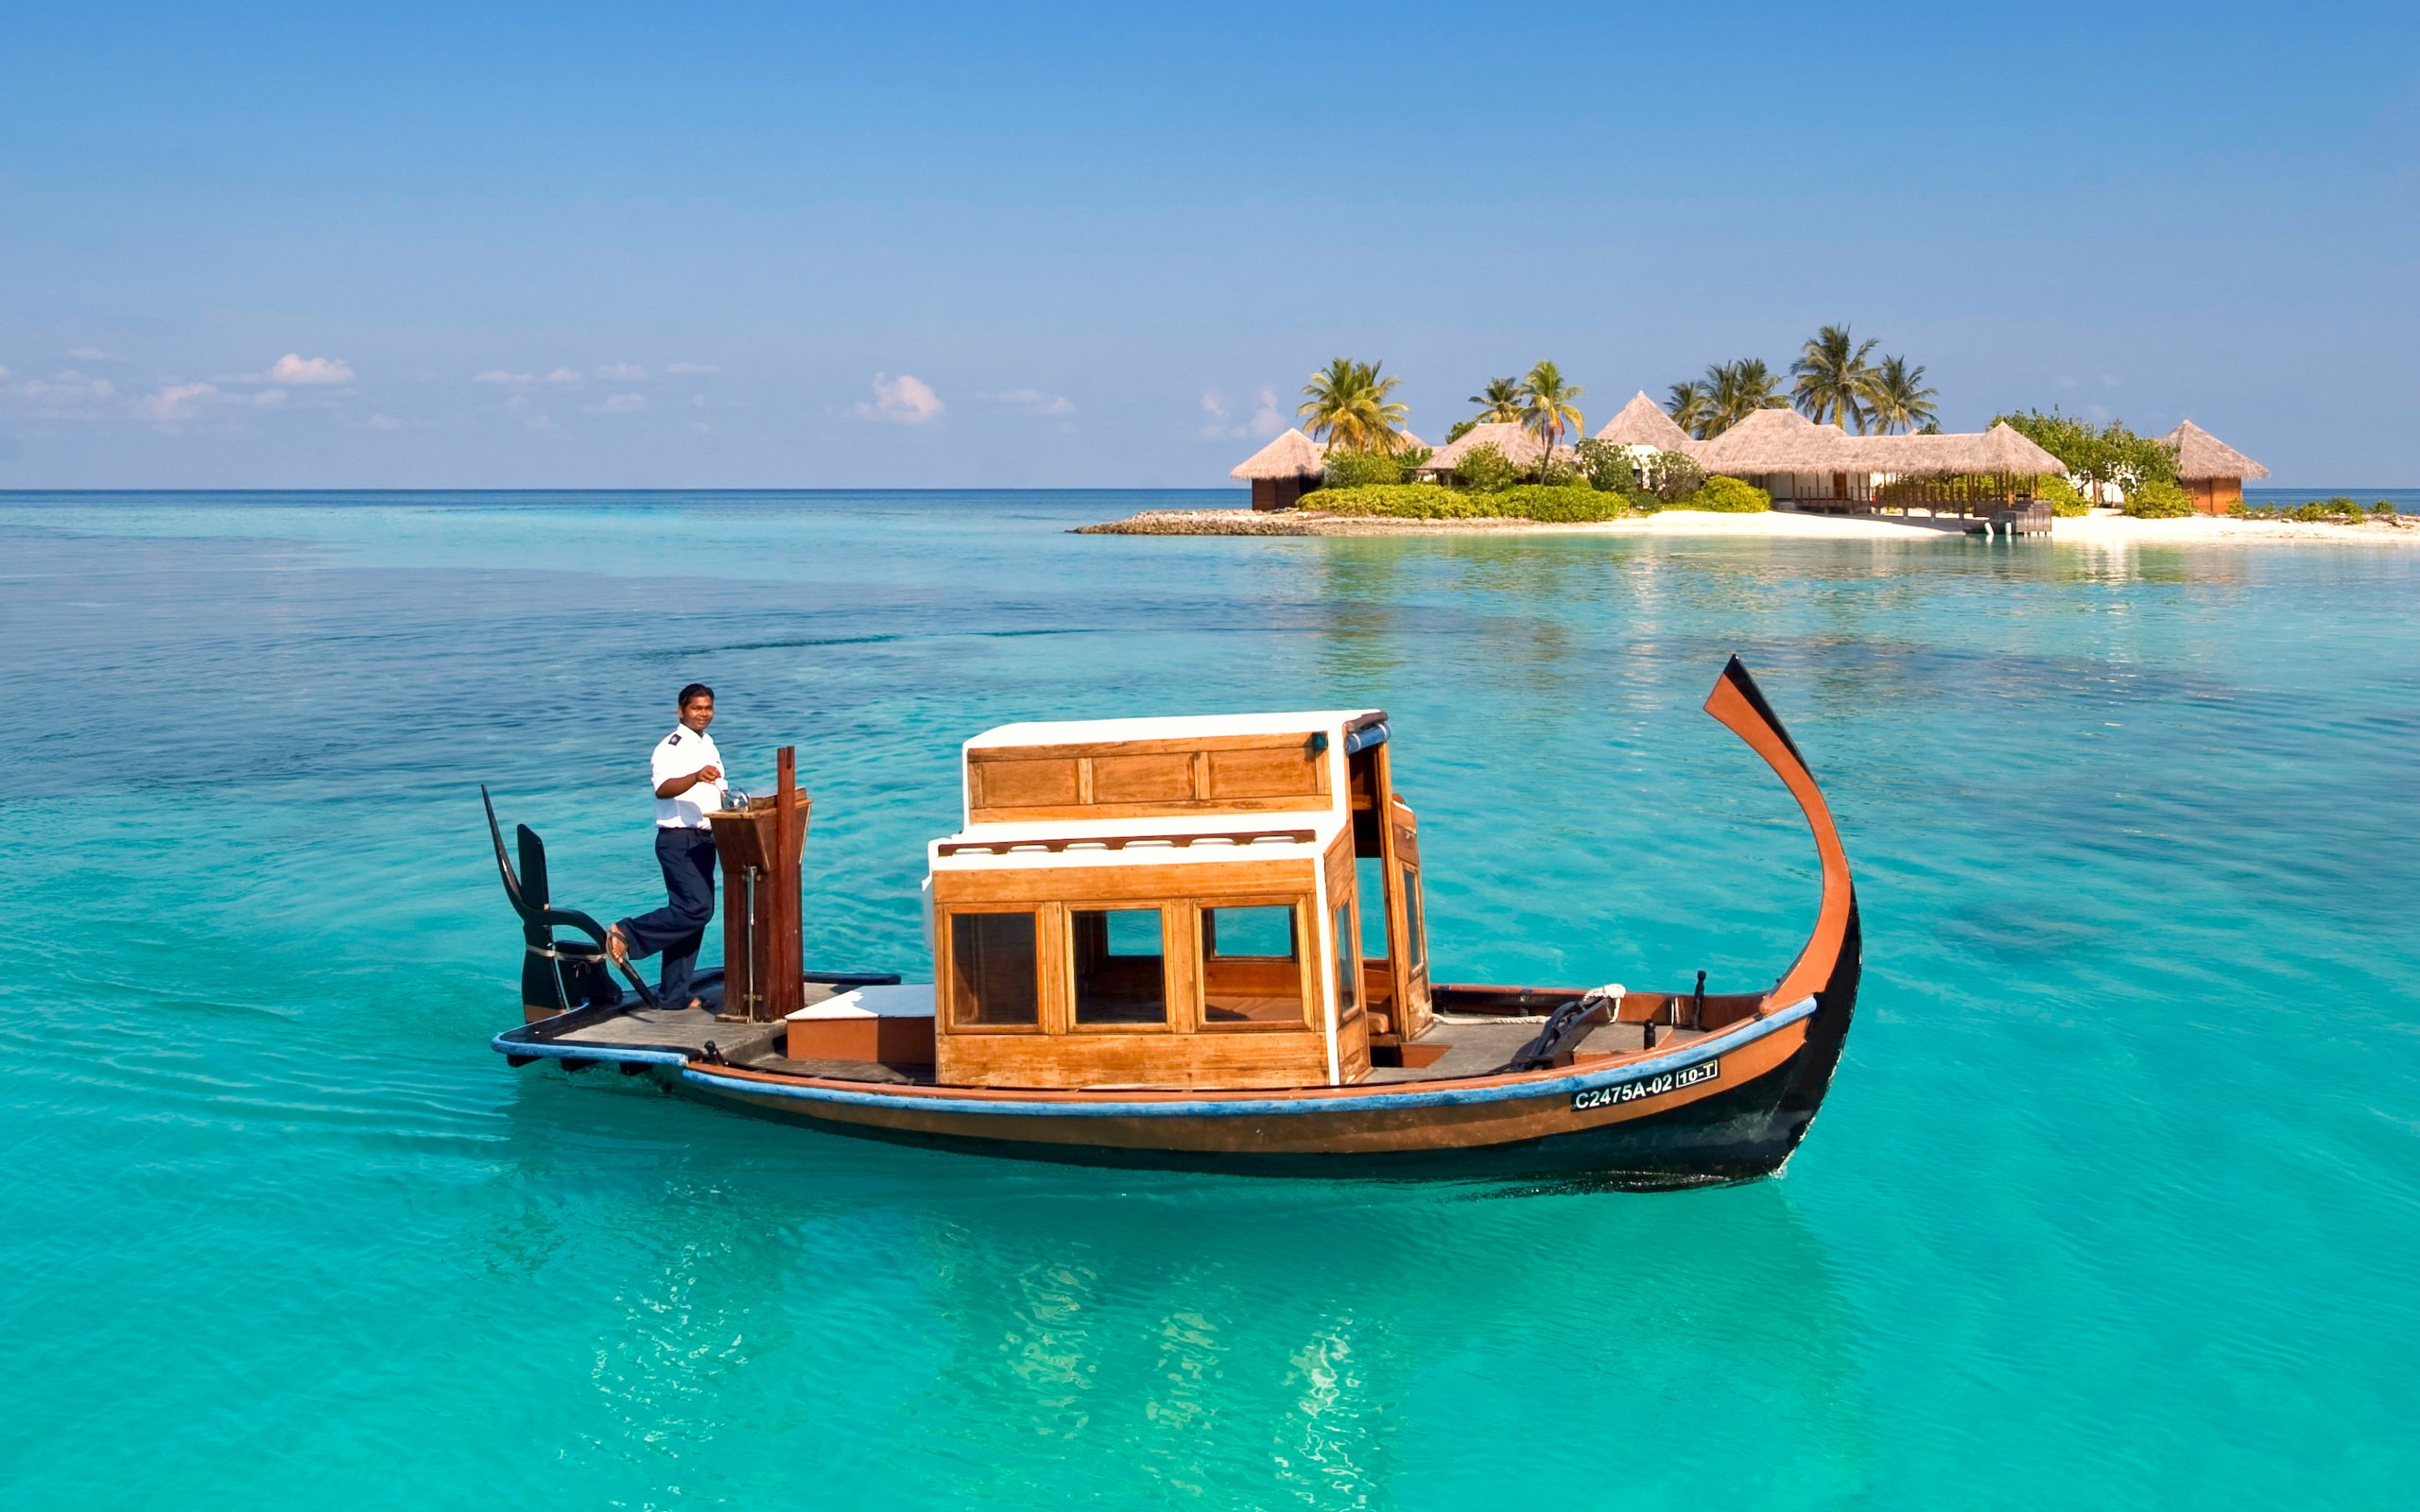 Boat island. Лодка Дони Мальдивы. Парадайз Айленд Мальдивы. Парадиз остров Карибского моря. Гавайские лодки.